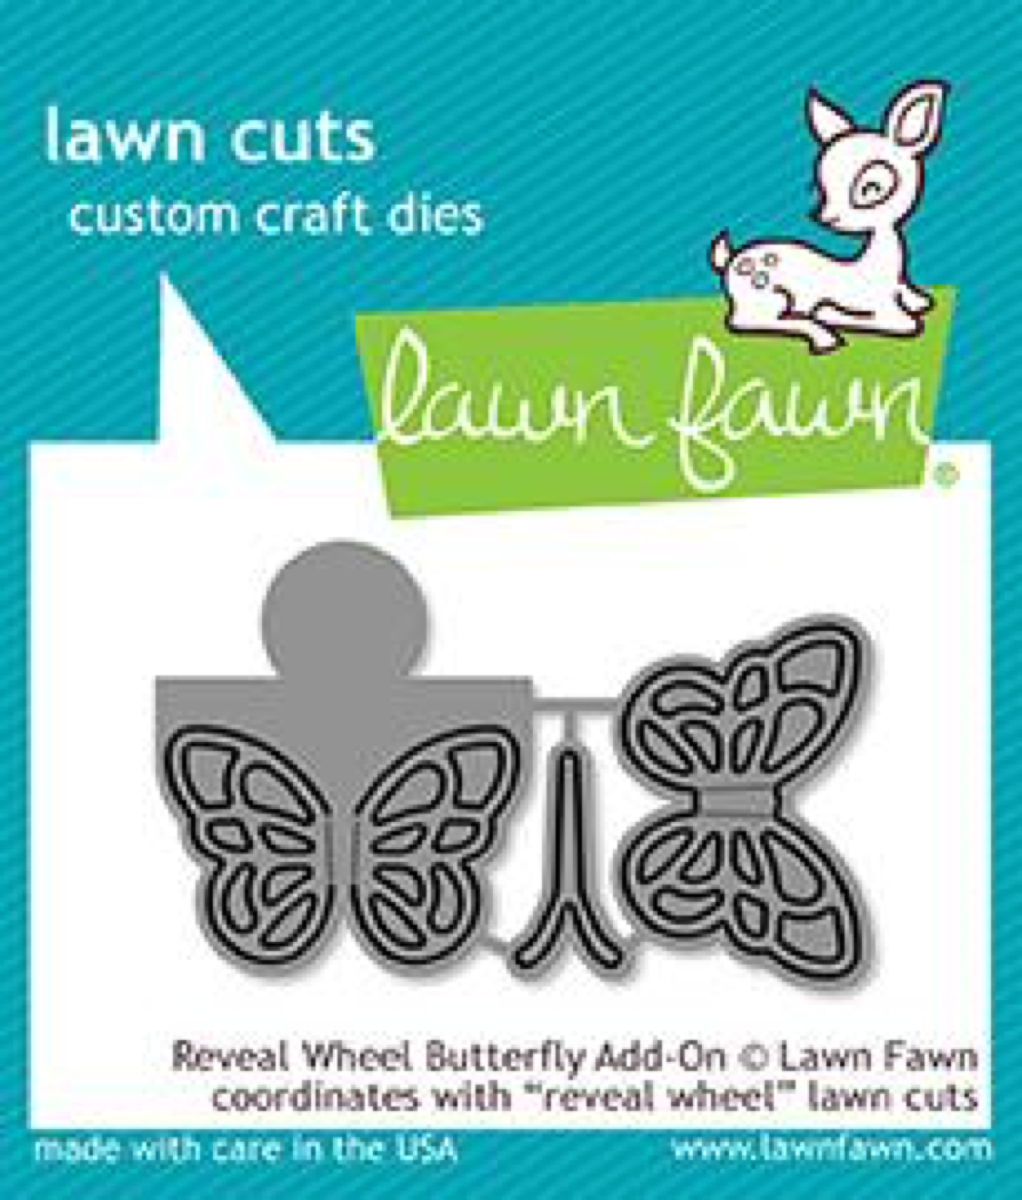 Lawn Fawn - Reveal Wheel Butterfly Add-On Dies